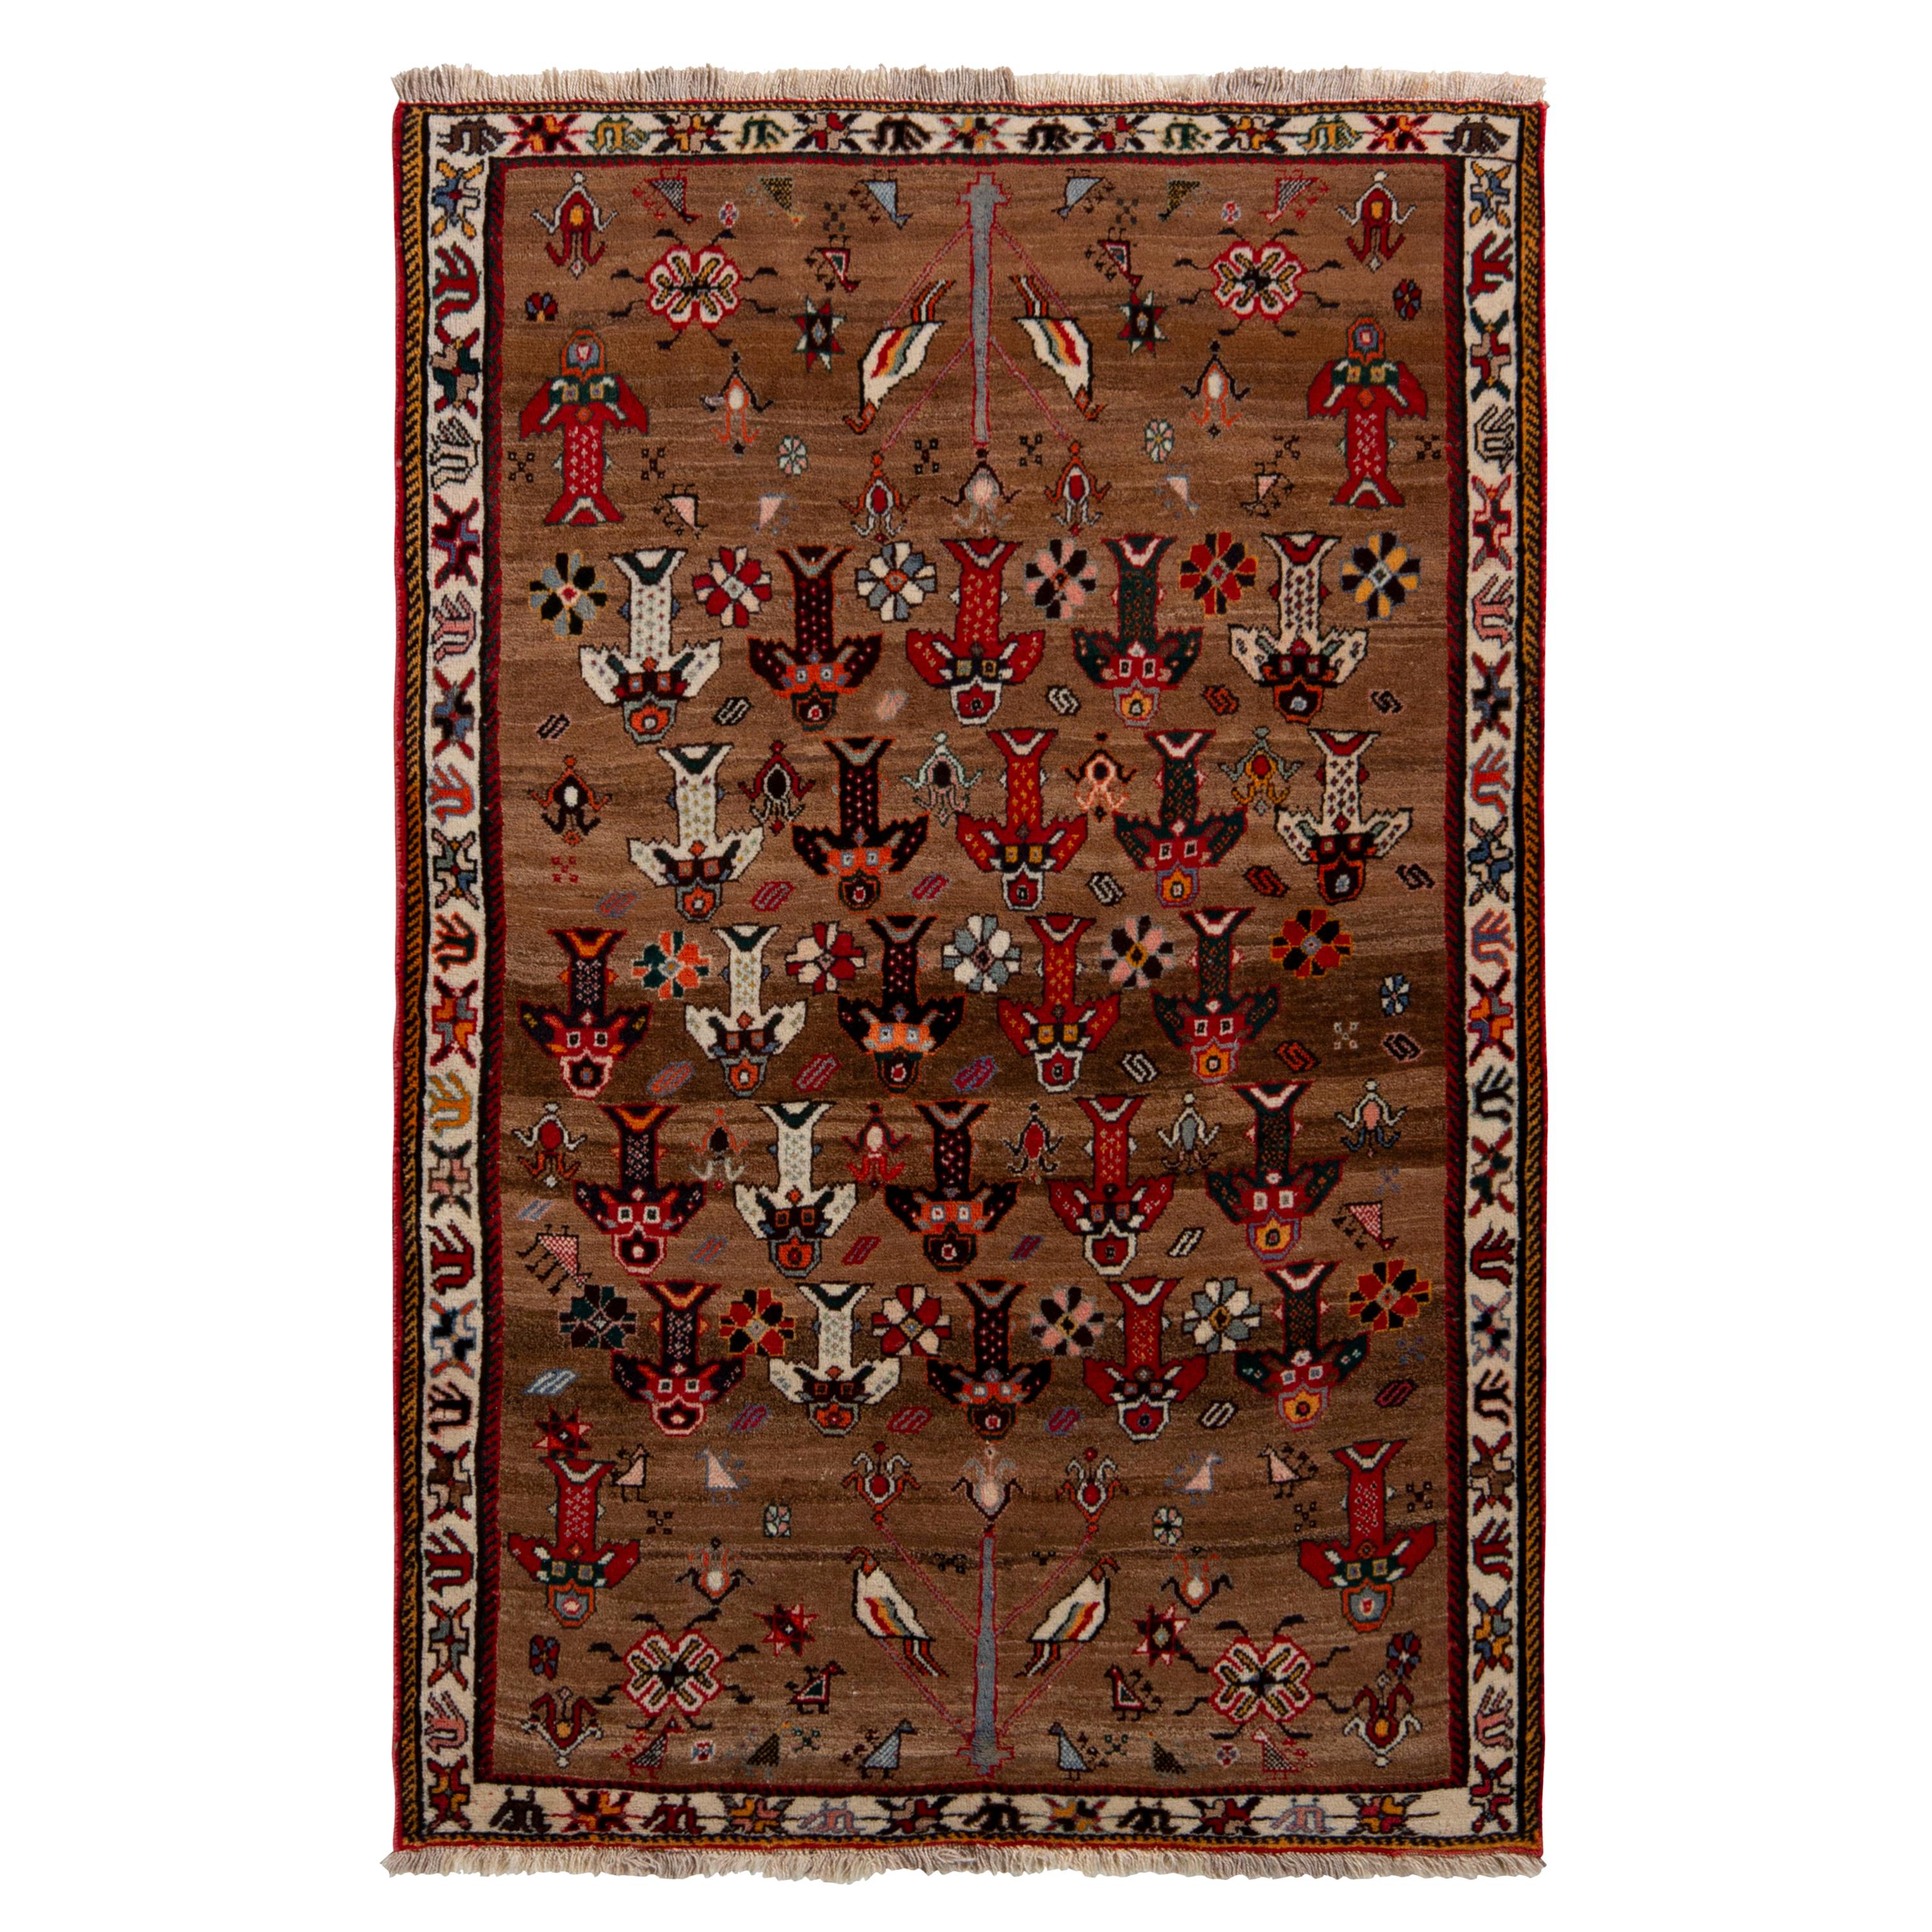 Vintage Persian Gabbeh Rug in Beige-Brown & Red Geometric Pattern by Rug & Kilim